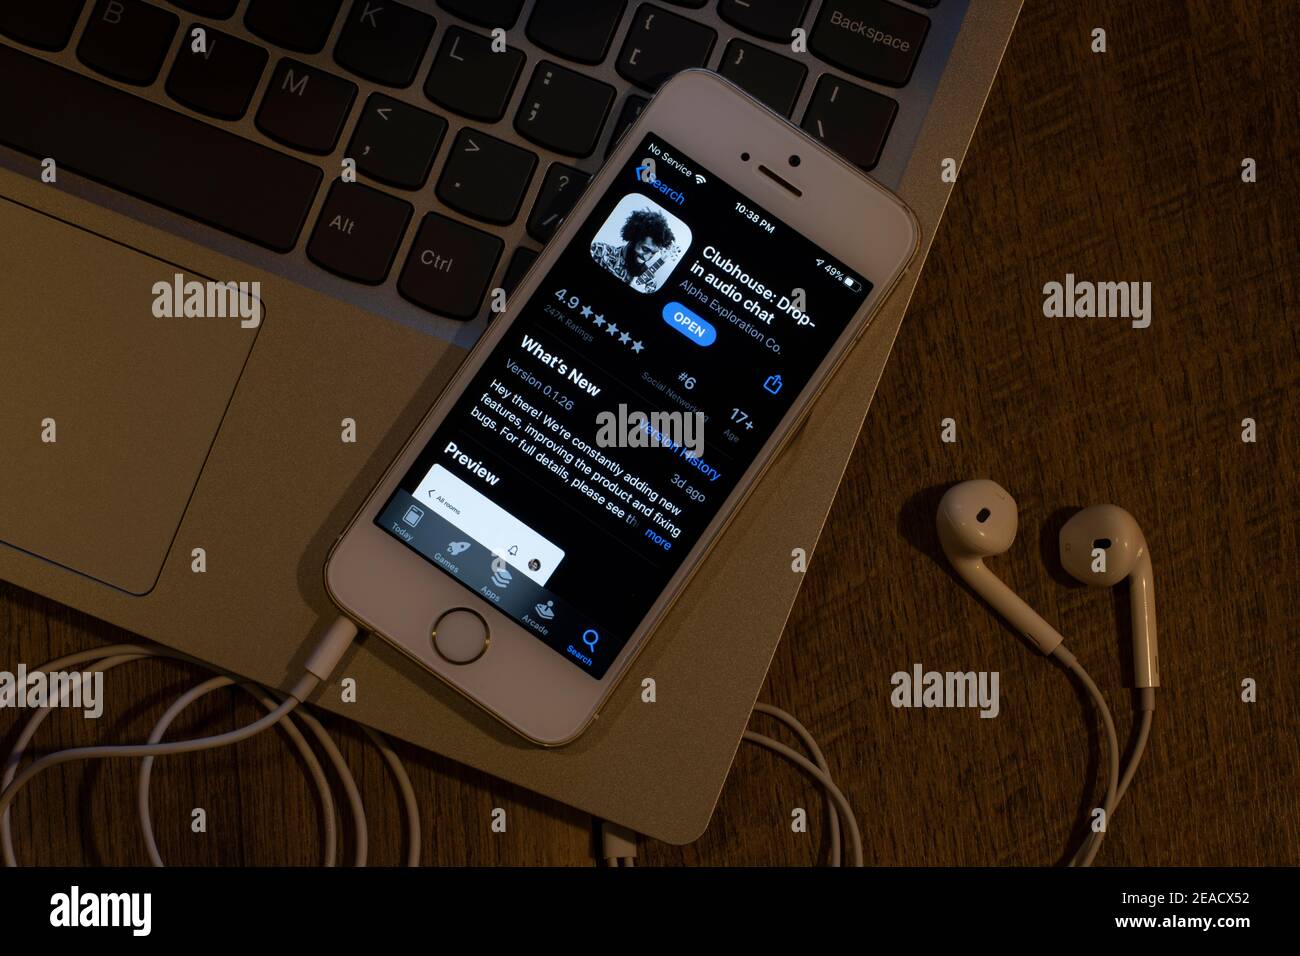 L'icône de l'application Clubhouse est visible sur un iPhone le 9 février 2021. Clubhouse Drop-In Audio Chat est une application de réseau social de chat audio sur invitation uniquement. Banque D'Images